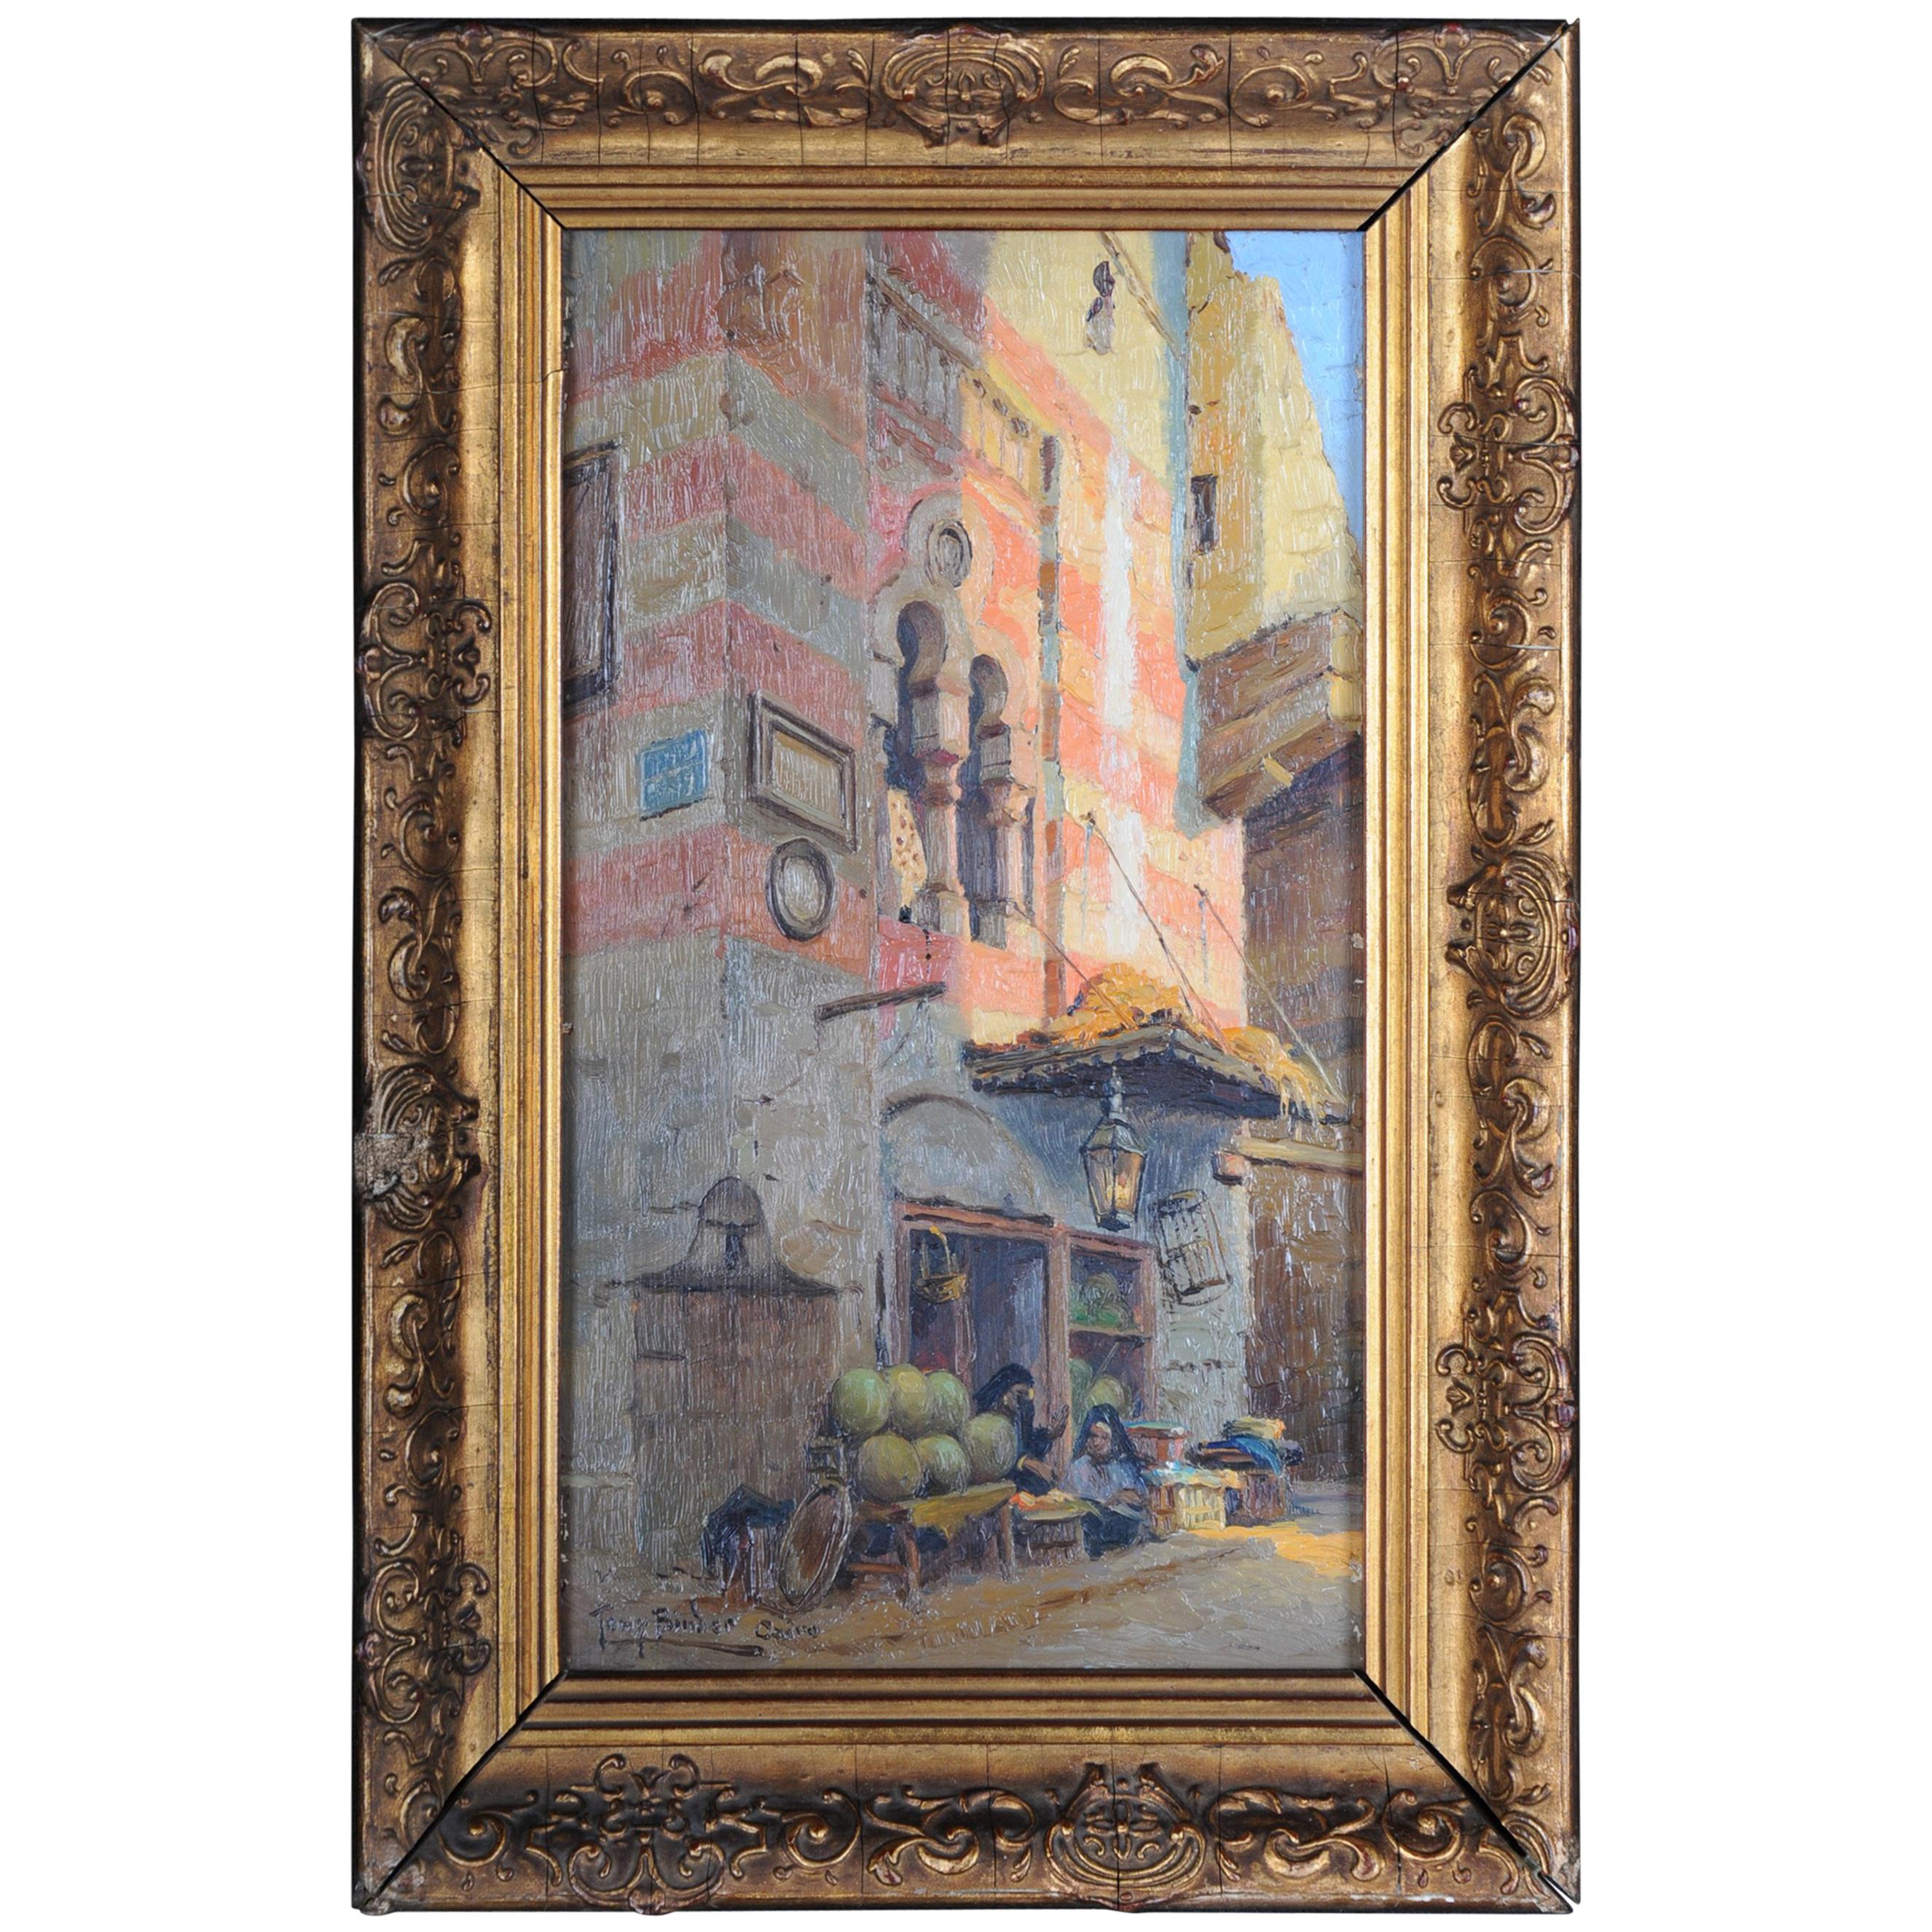 peinture à l'huile du 20ème siècle signée:: Tony Binder "Cairo":: circa 1920